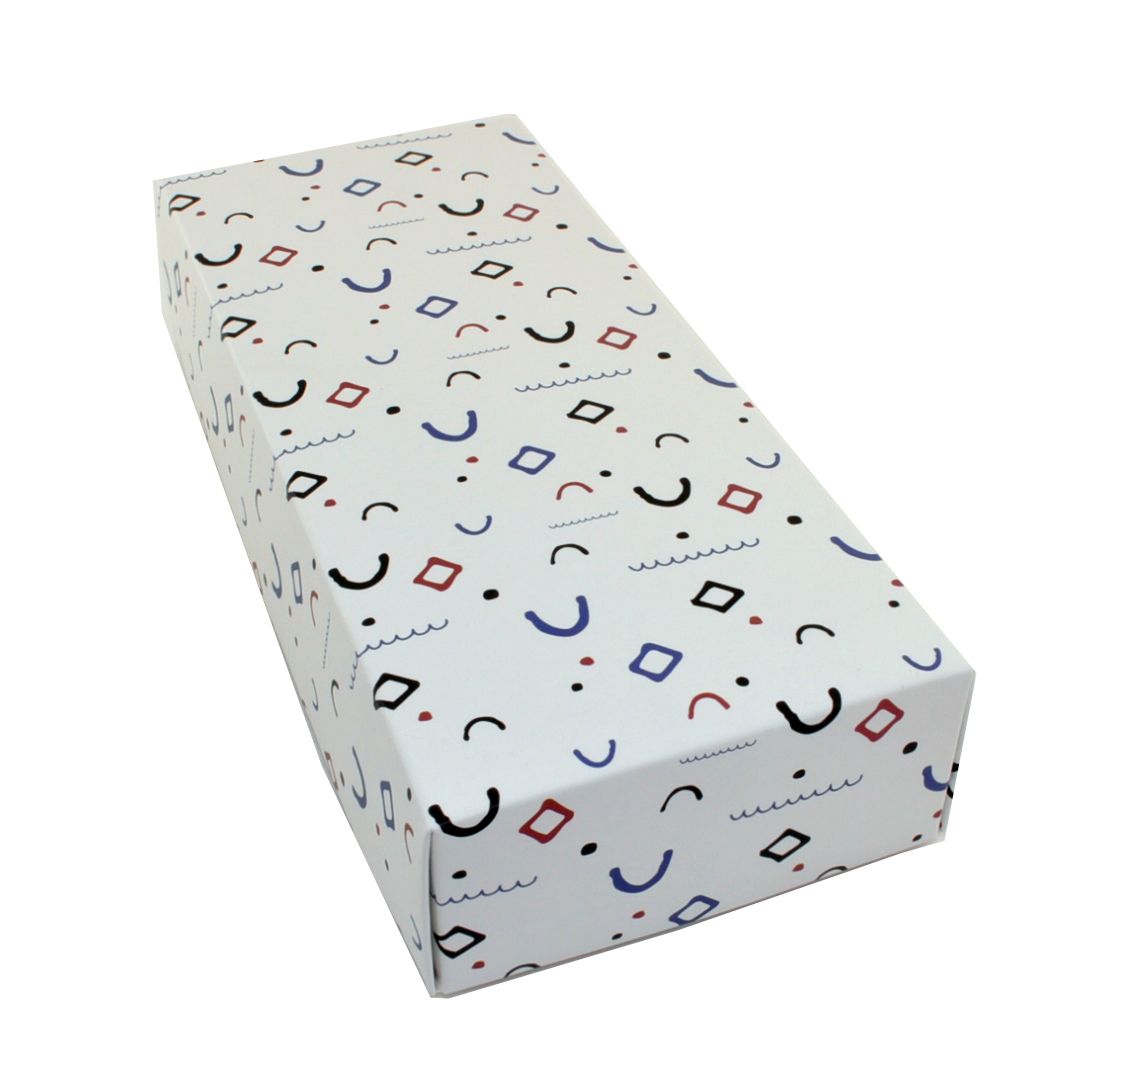 UP48 Коробка для носков белая с фигурками описание: Состав - Картон, Цвет - Белый, Размеры - ШхВхТ: 9,5 см х 22,5 см х 4,5 см, Вес - , Стоимость - 250 руб руб.;